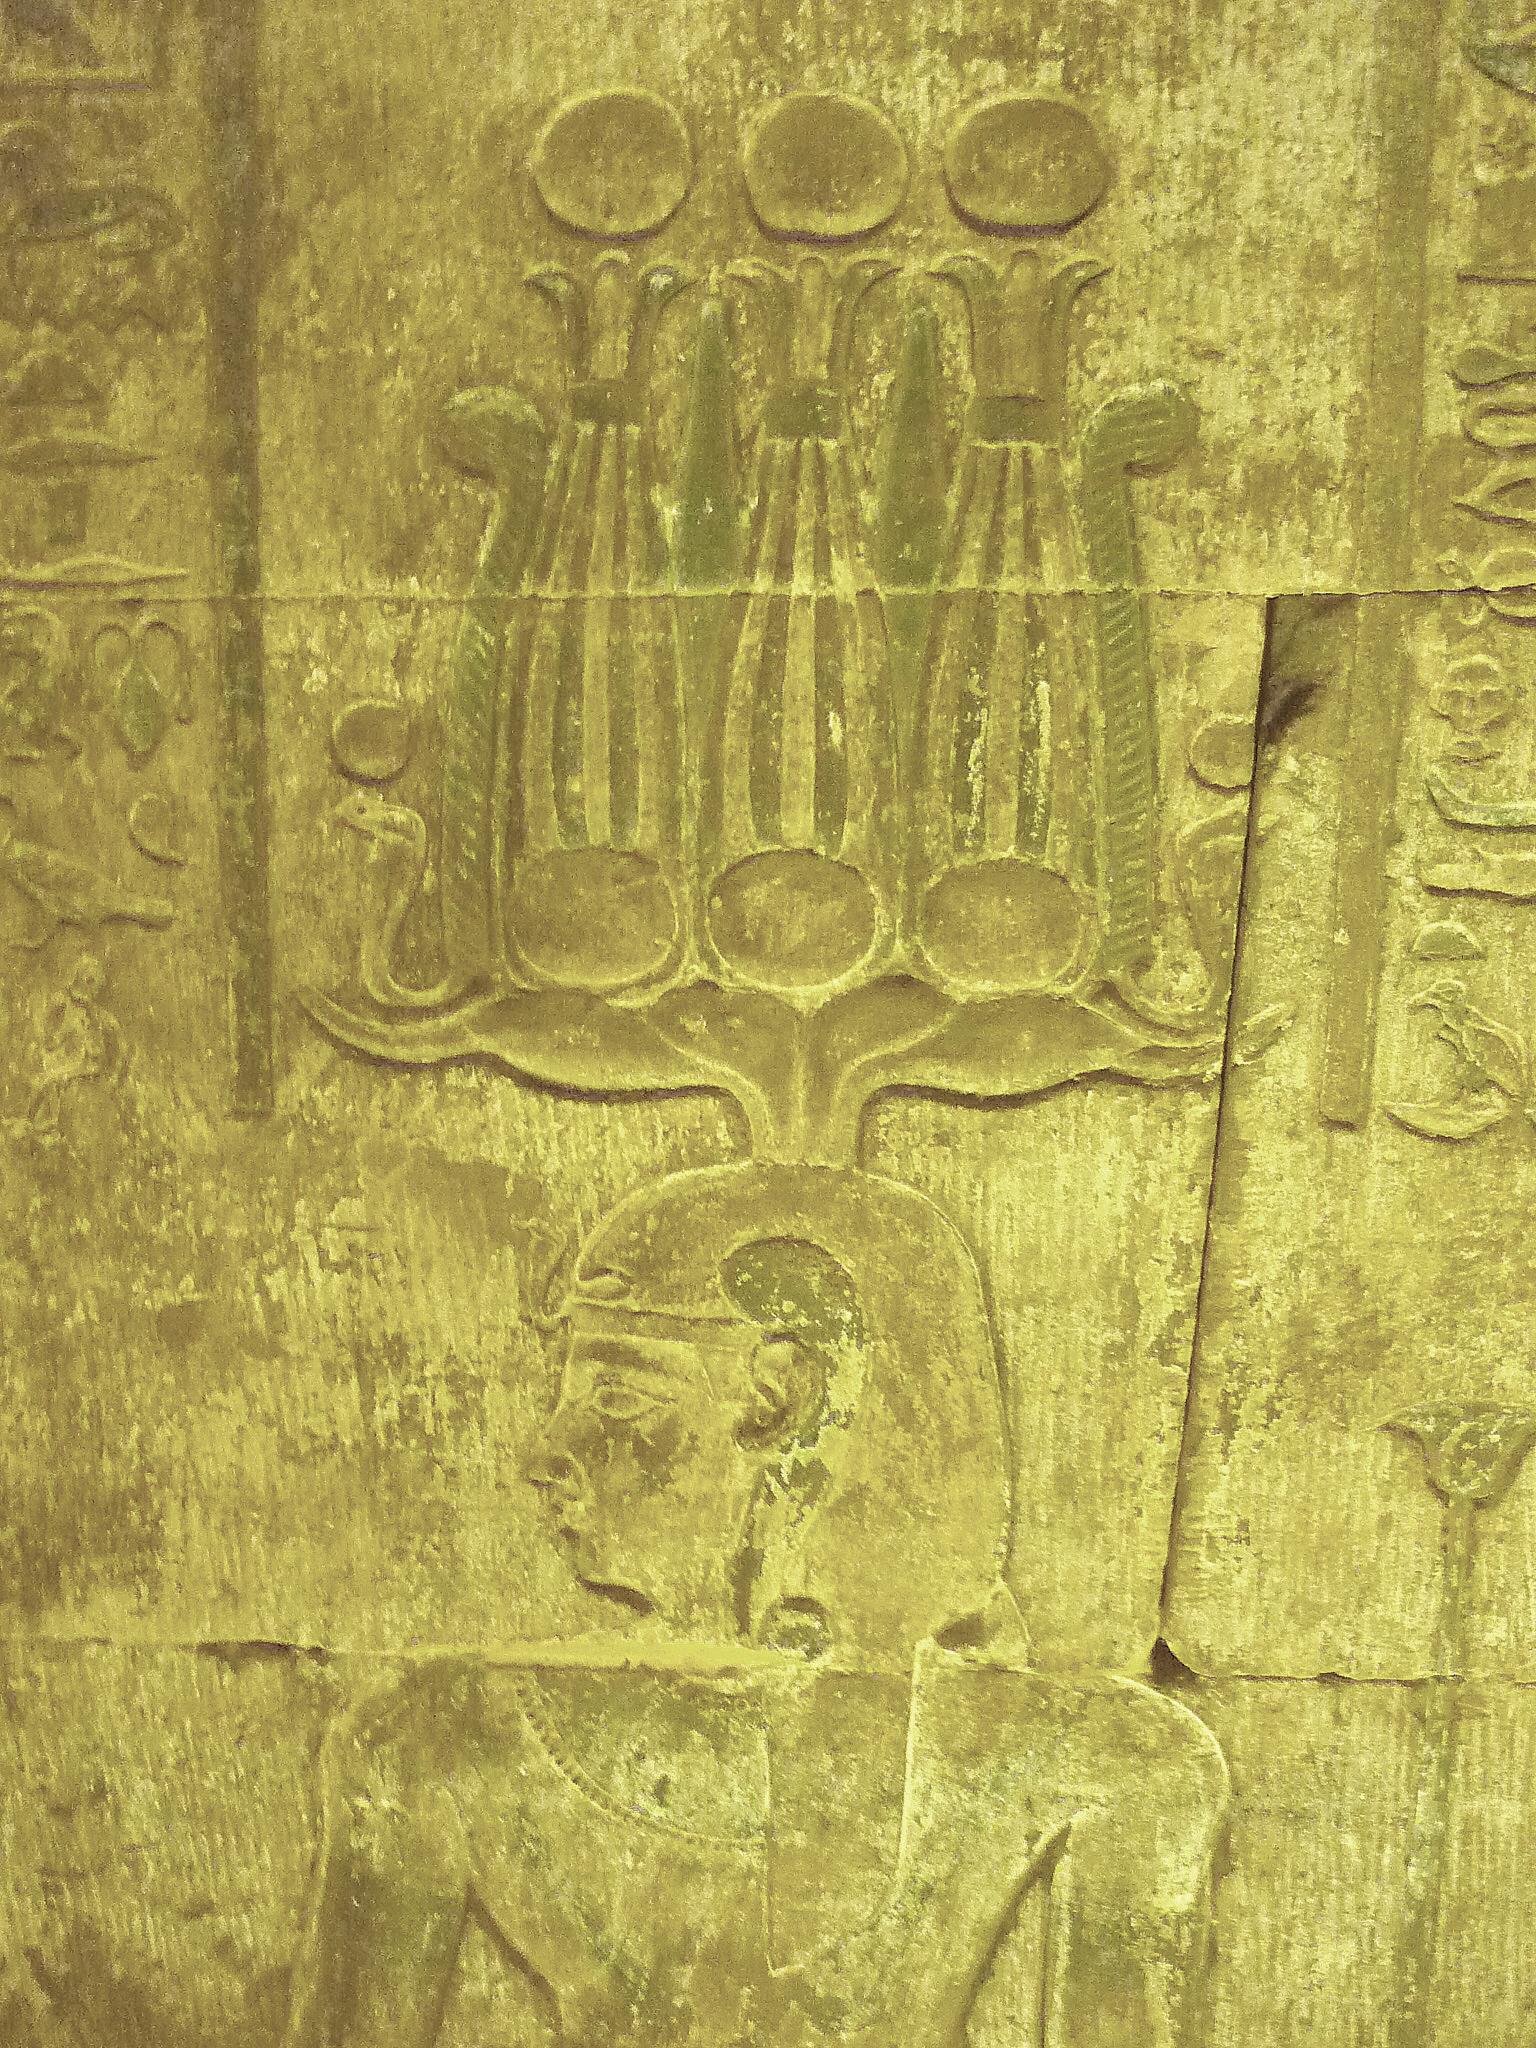 Blessures et maladies des divinités, en Égypte antique !